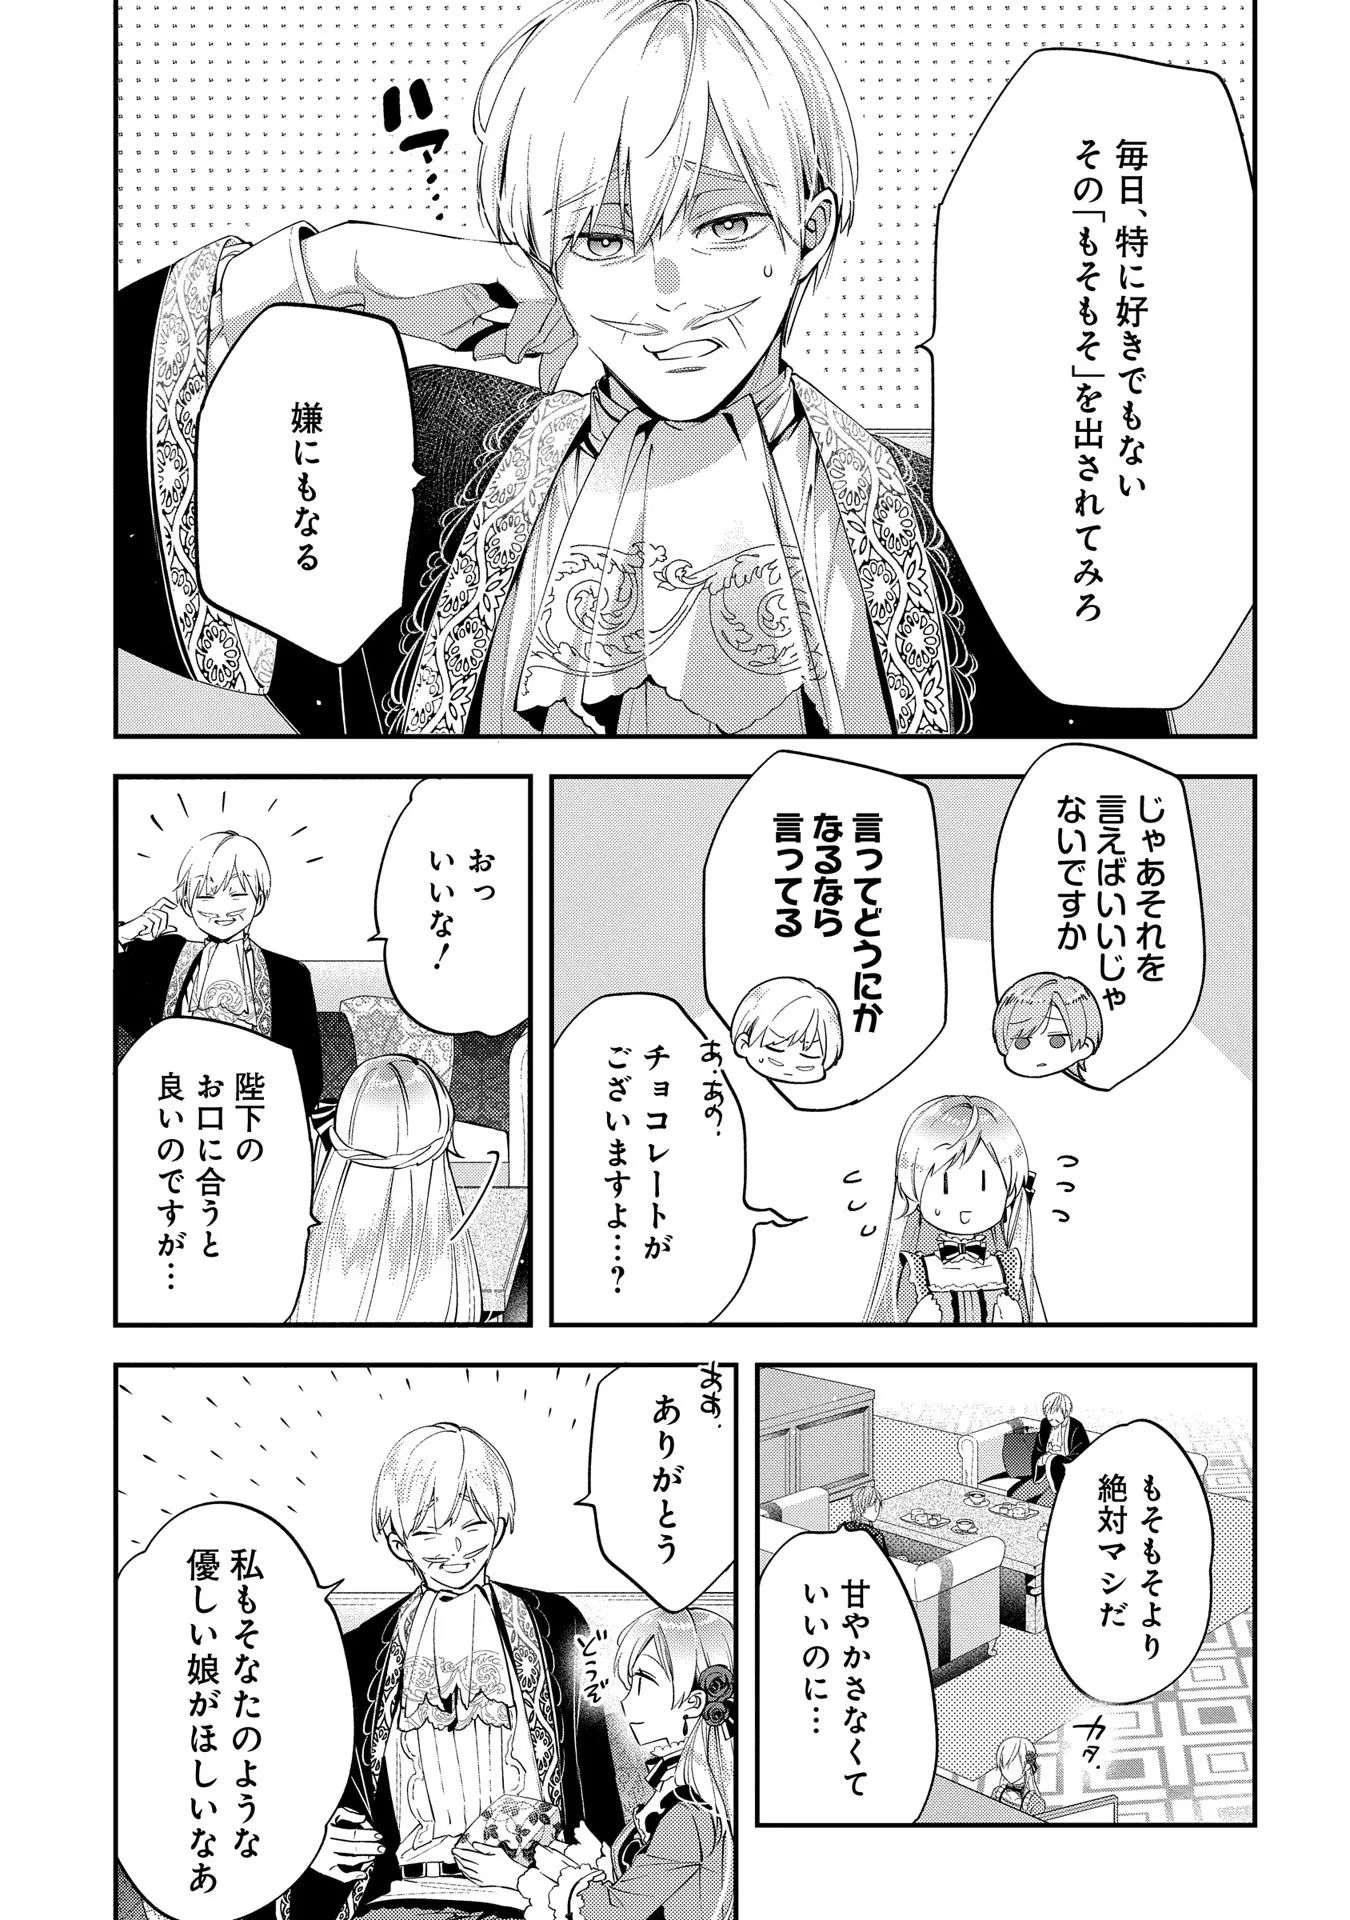 Outaishi ni Konyaku Hakisareta no de, Mou Baka no Furi wa Yameyou to Omoimasu - Chapter 9 - Page 3